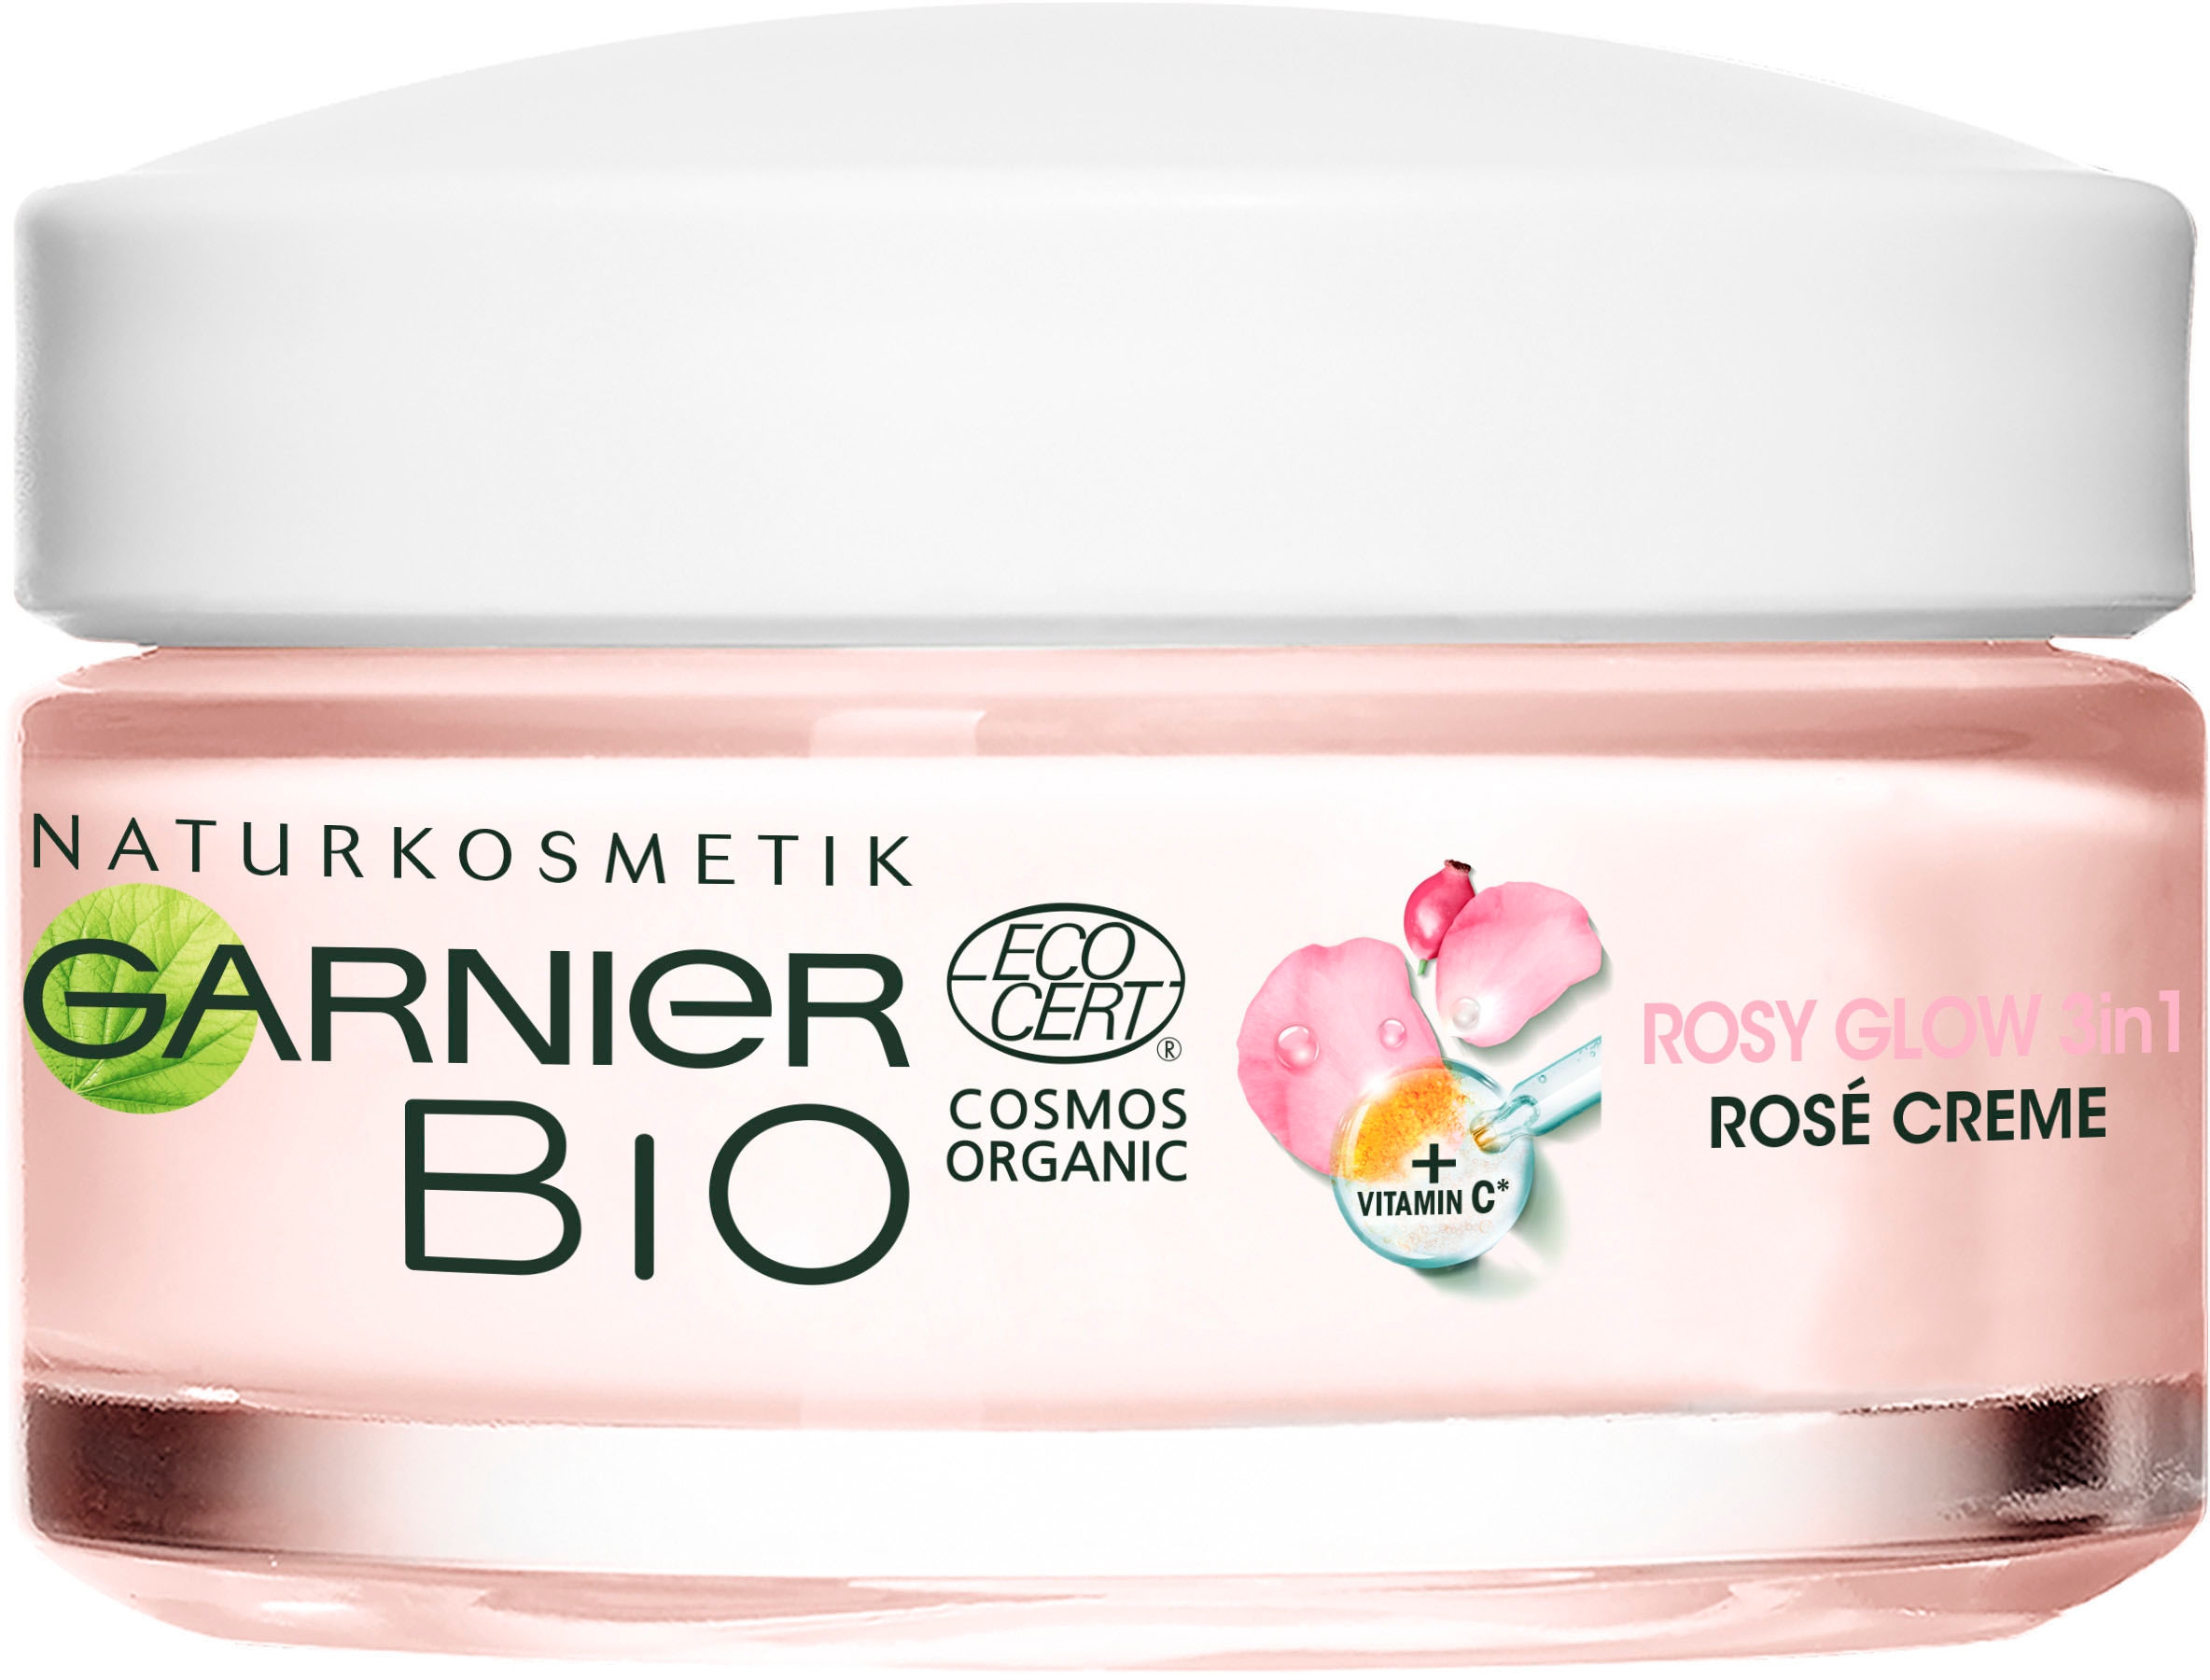 Rosé« GARNIER kaufen 3in1 im OTTO »Rosy Feuchtigkeitscreme Shop Online Glow